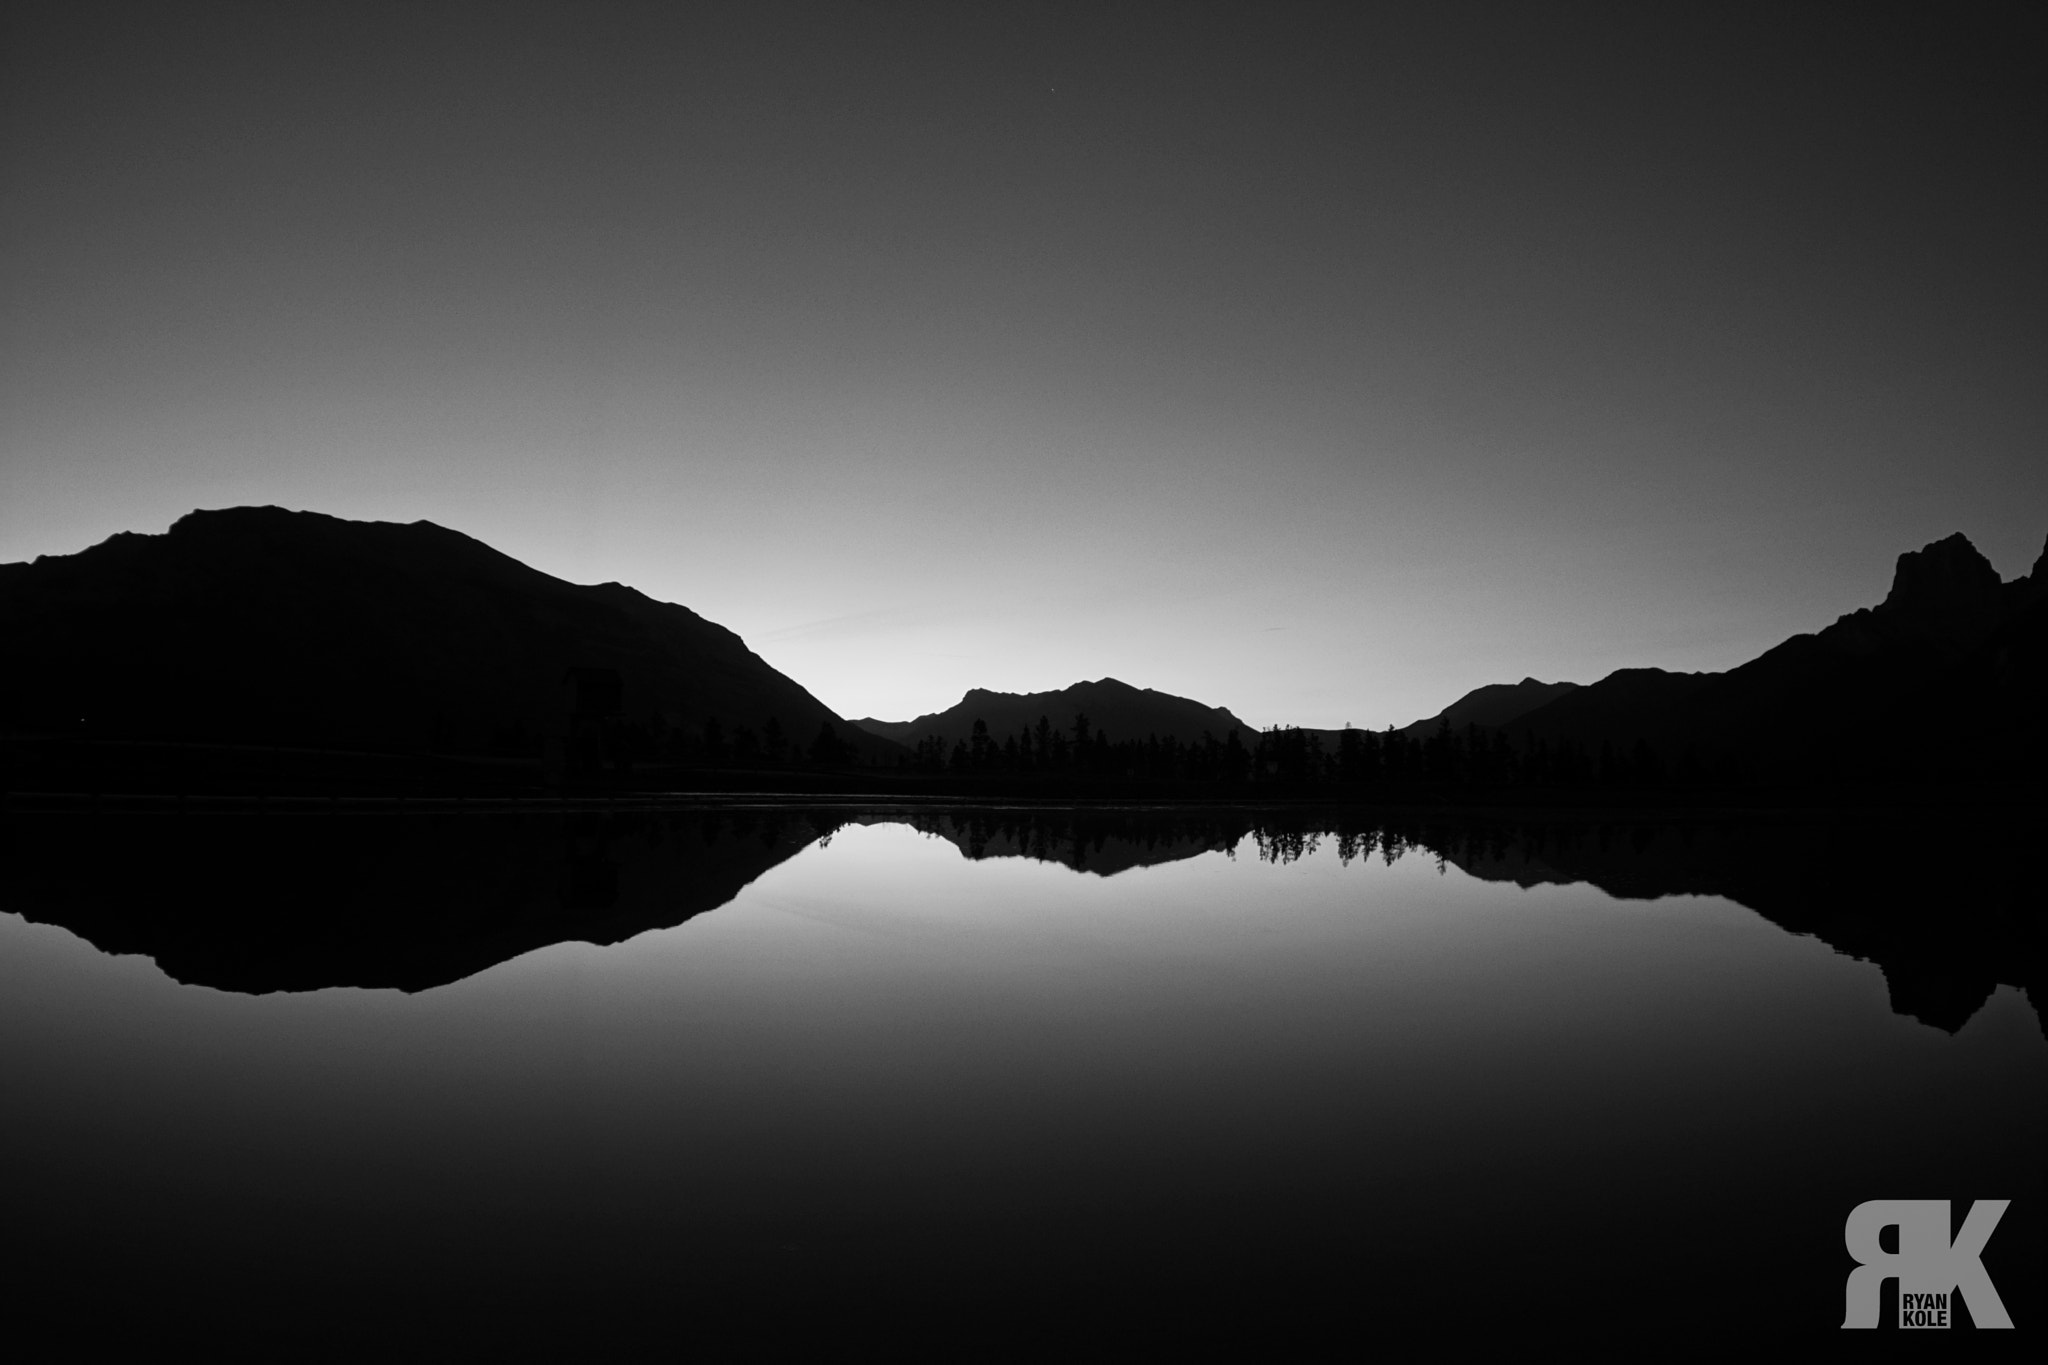 Sony ILCA-77M2 sample photo. Quarry lake sunrise photography